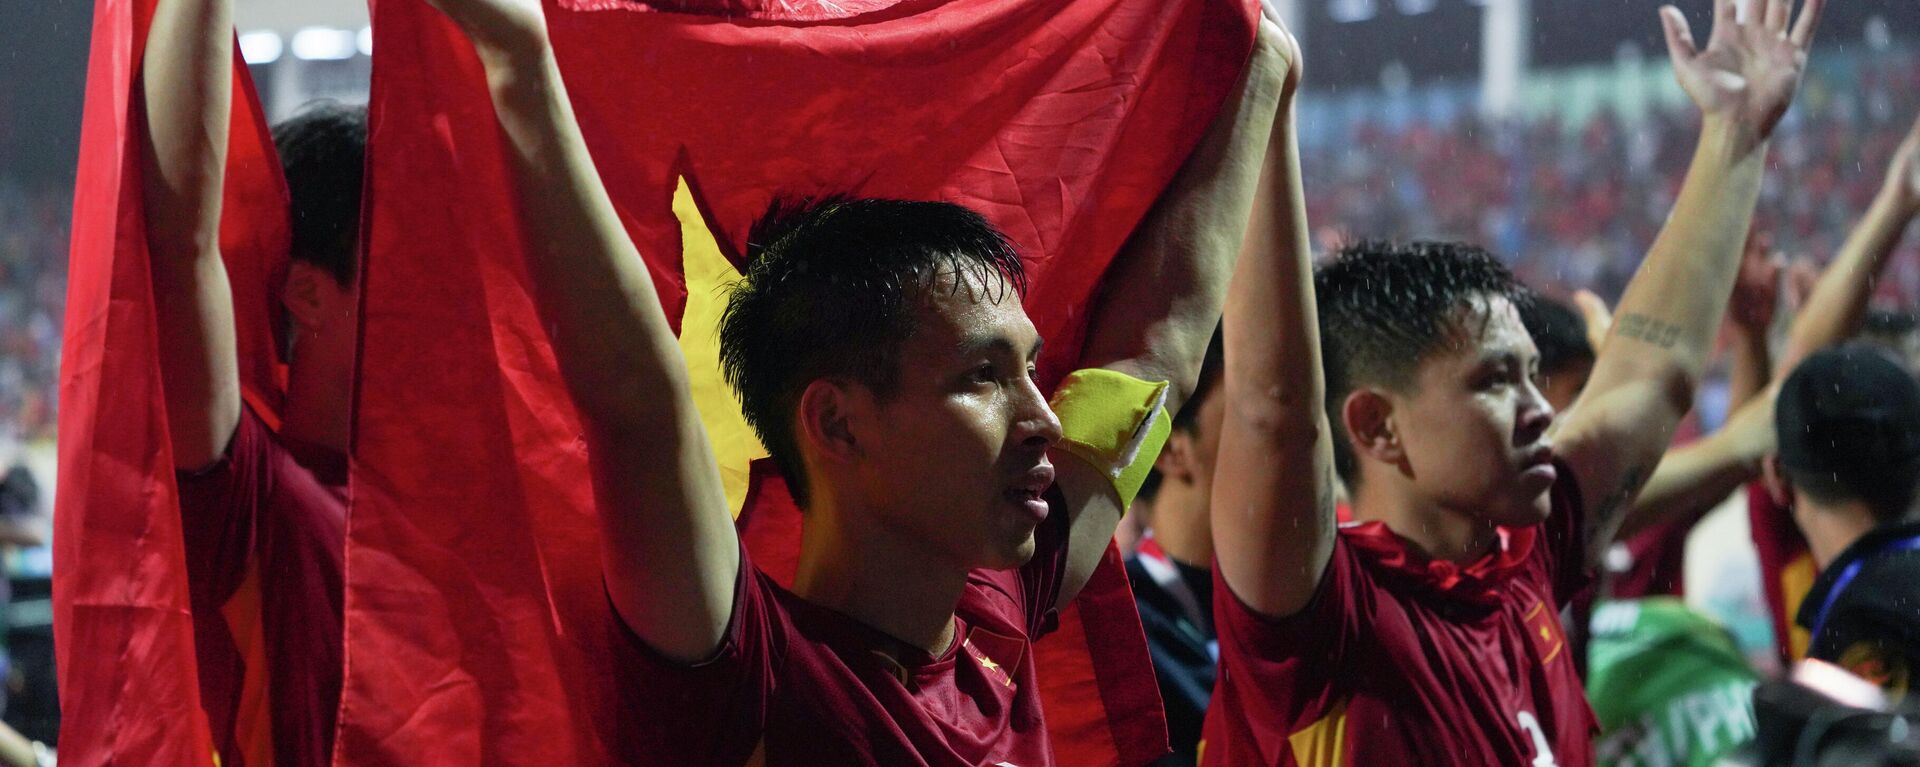 Các cầu thủ Việt Nam ăn mừng chiến thắng trên bục cùng người hâm mộ tại chung kết bóng đá nam SEA Games 31 (Đội trưởng Hùng Dũng và thủ môn Văn Toản) - Sputnik Việt Nam, 1920, 26.08.2022